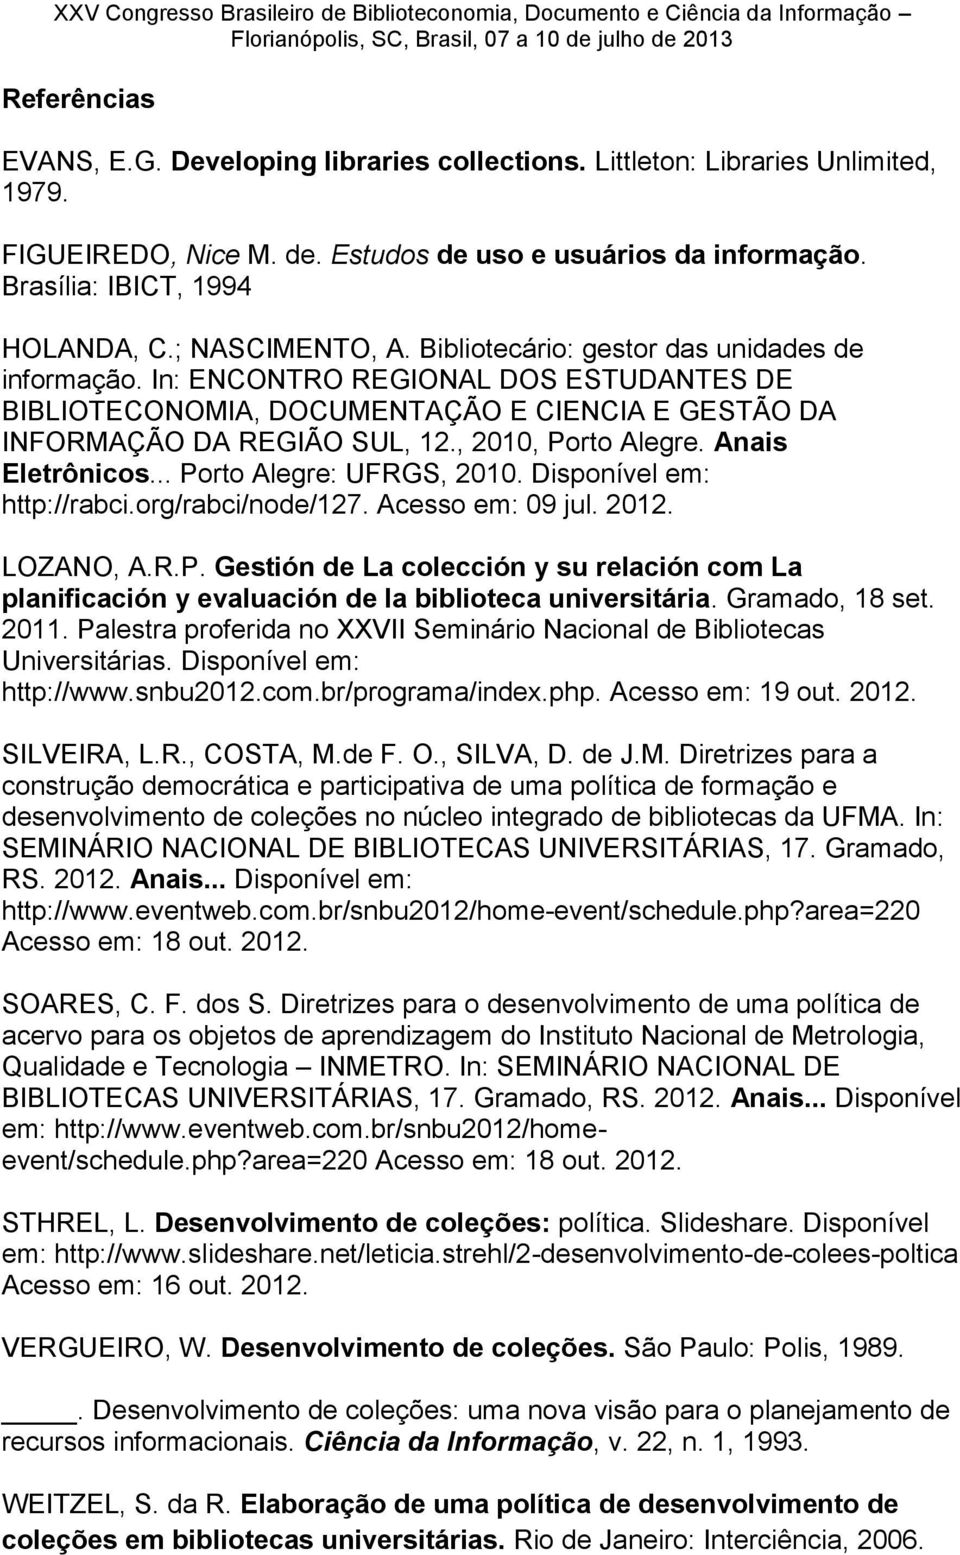 , 2010, Porto Alegre. Anais Eletrônicos... Porto Alegre: UFRGS, 2010. Disponível em: http://rabci.org/rabci/node/127. Acesso em: 09 jul. 2012. LOZANO, A.R.P. Gestión de La colección y su relación com La planificación y evaluación de la biblioteca universitária.